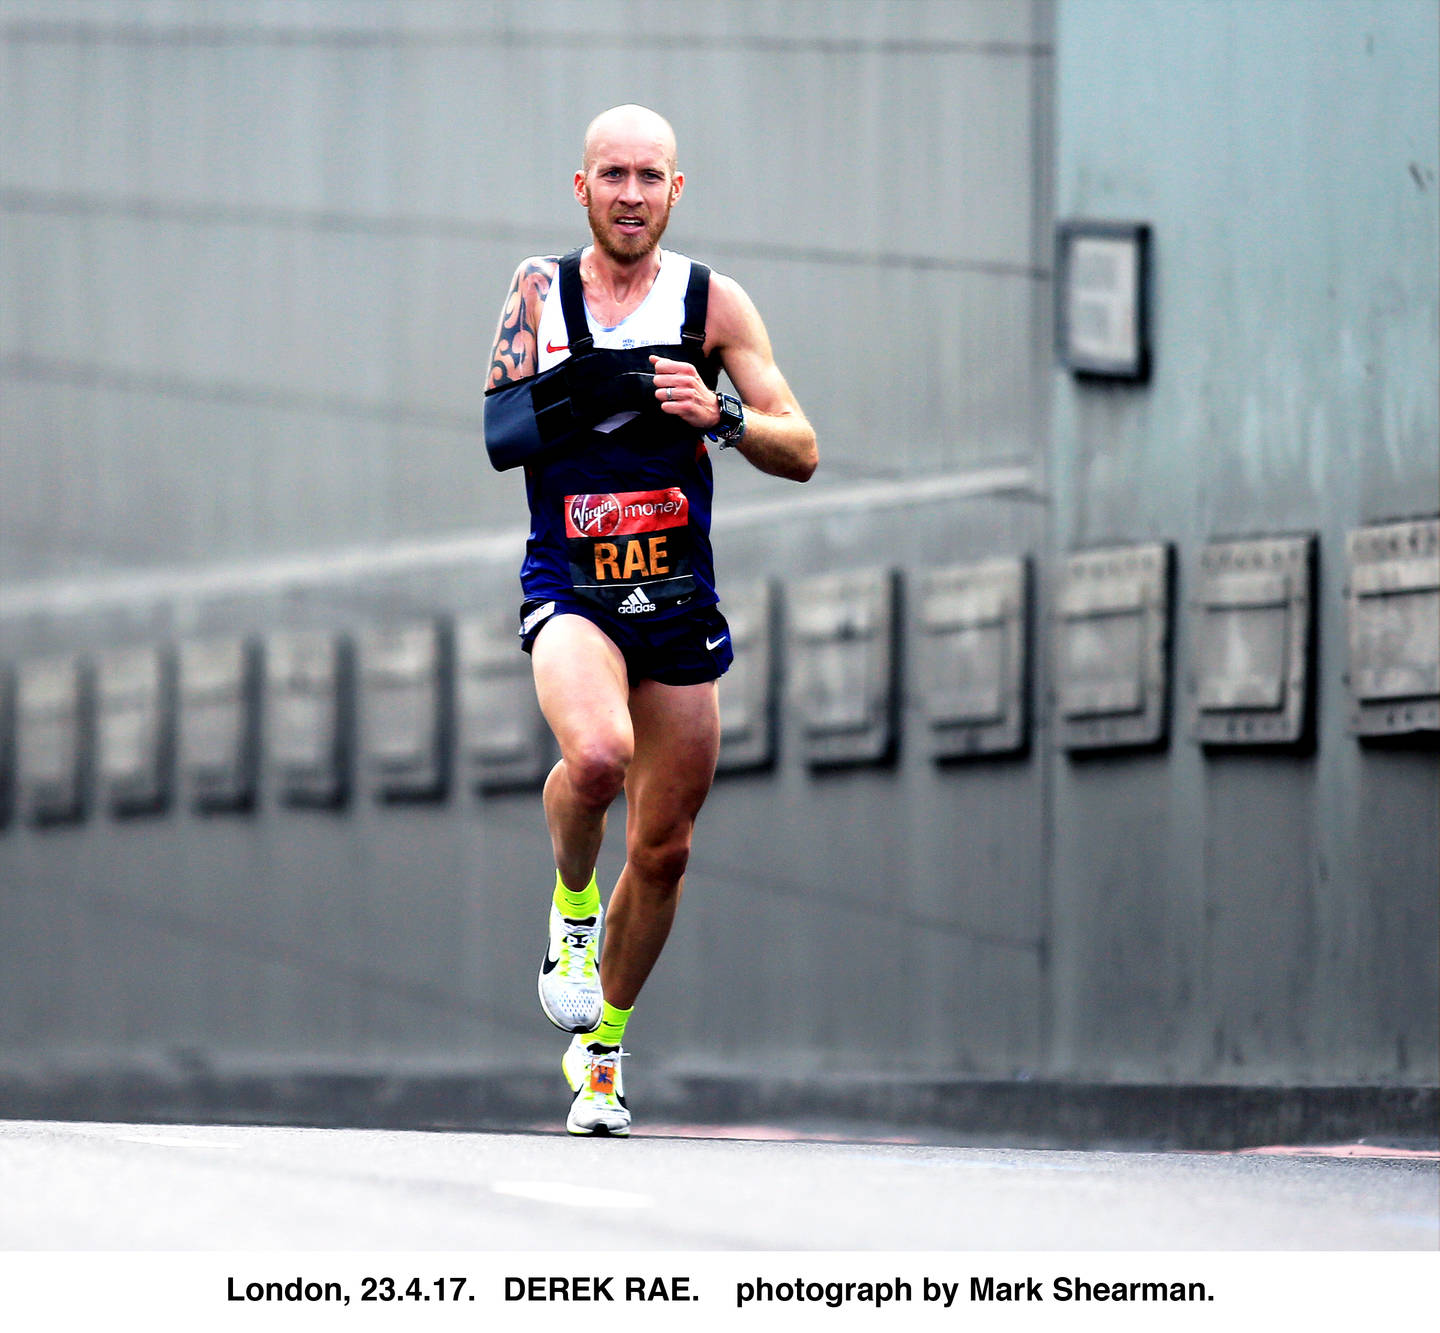 Derek Rae in the 2017 London Marathon